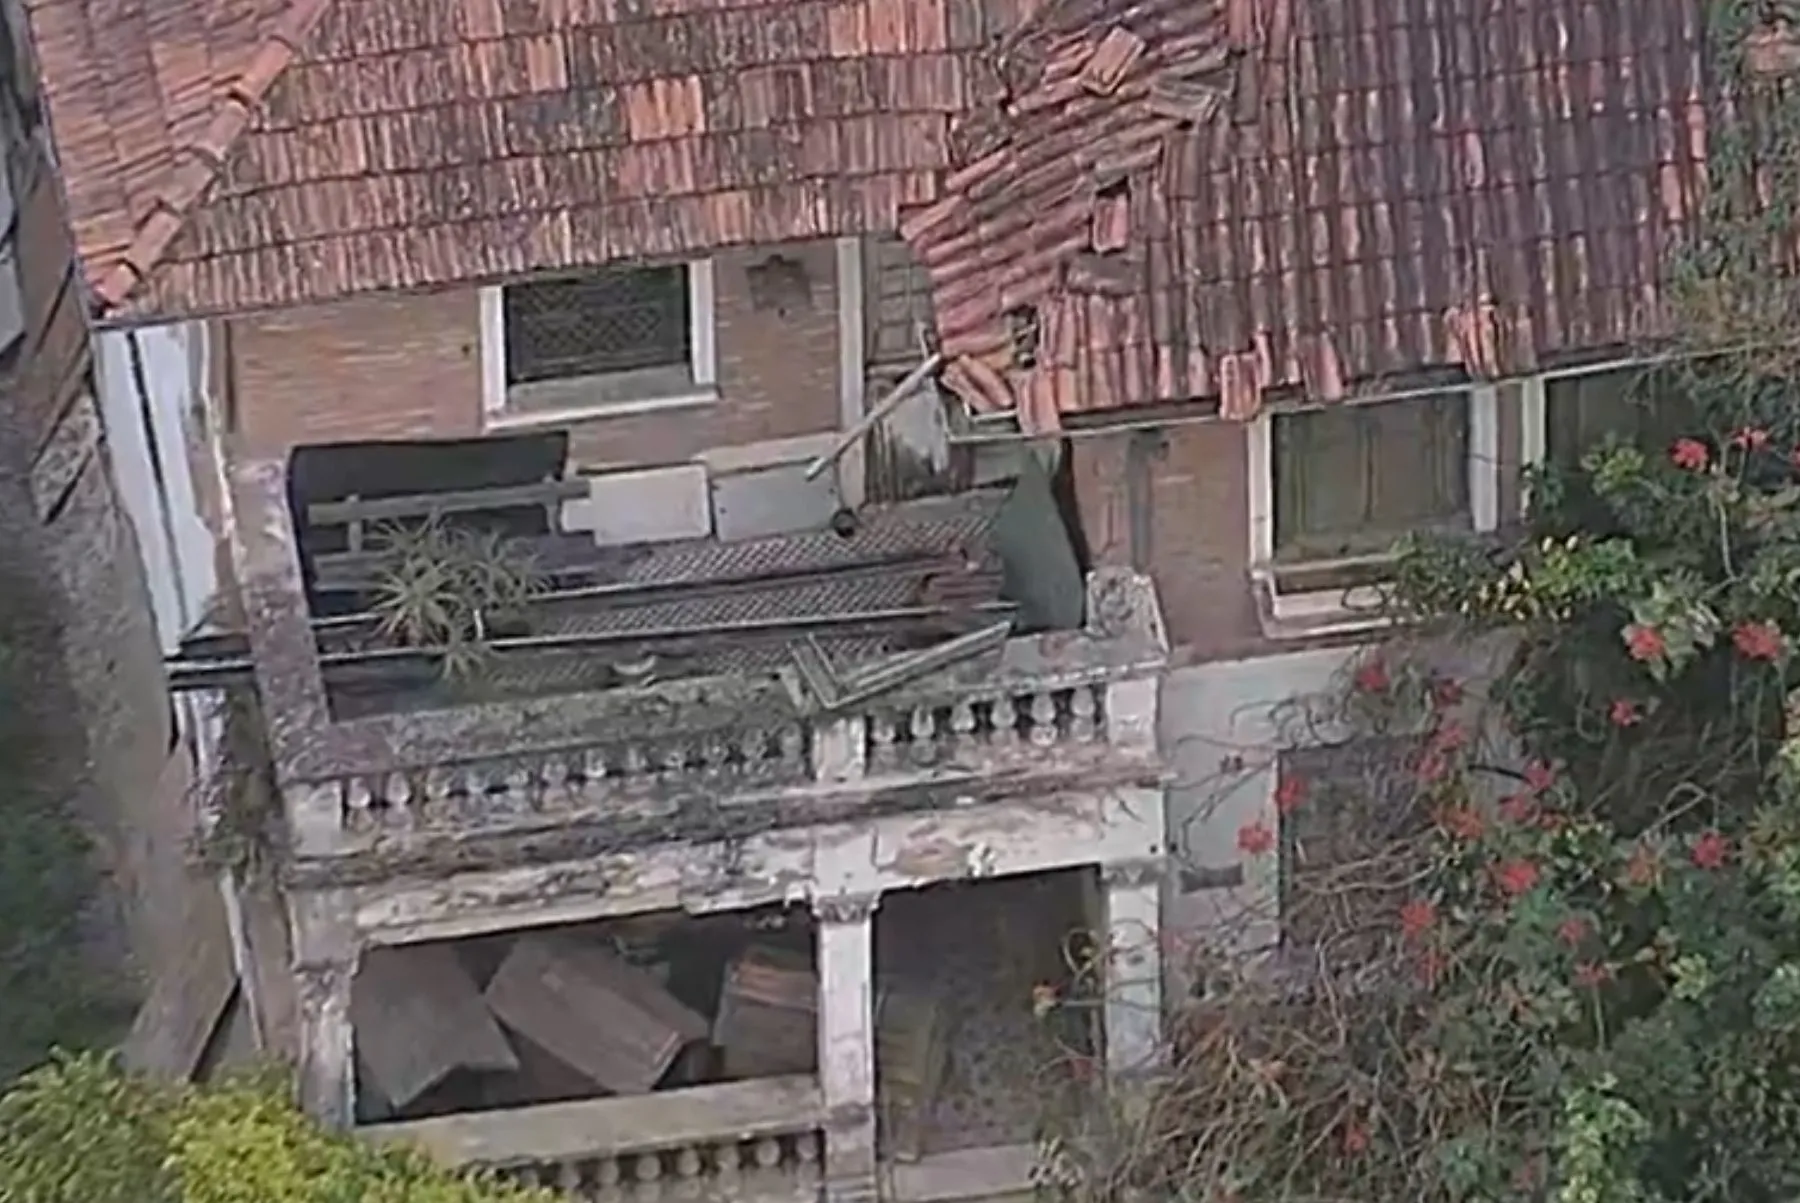 Mulher vivia em uma casa aparentemente abandonada em São Paulo